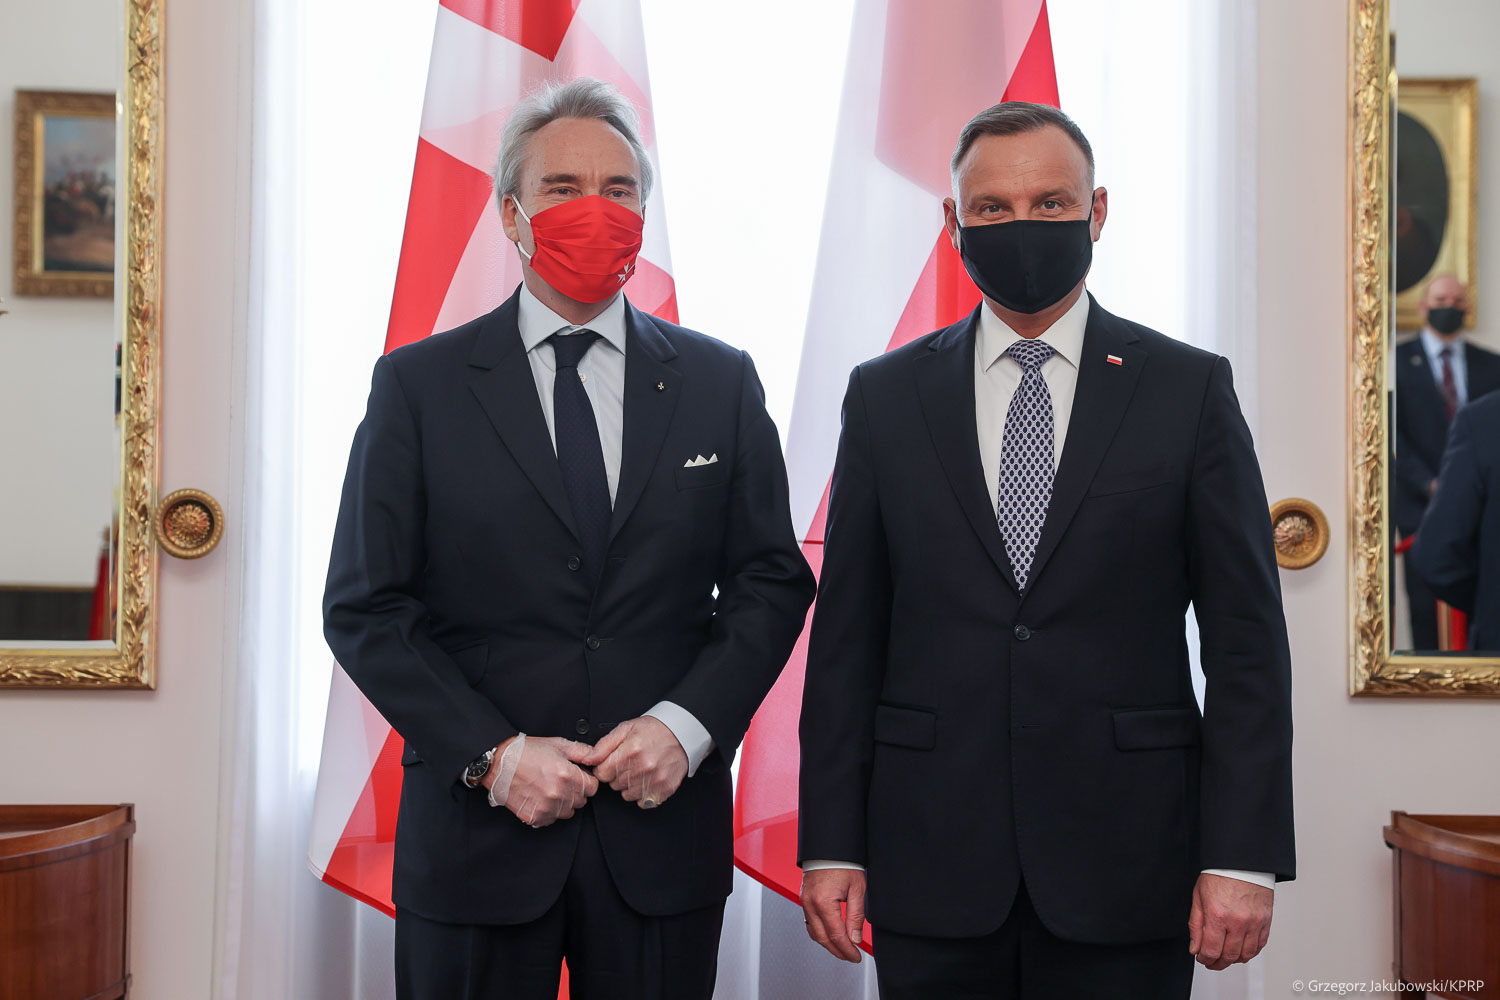 Der Präsident der Republik Polen nahm das Beglaubigungsschreiben von neuem Botschafter des Souveränen Malteserordens